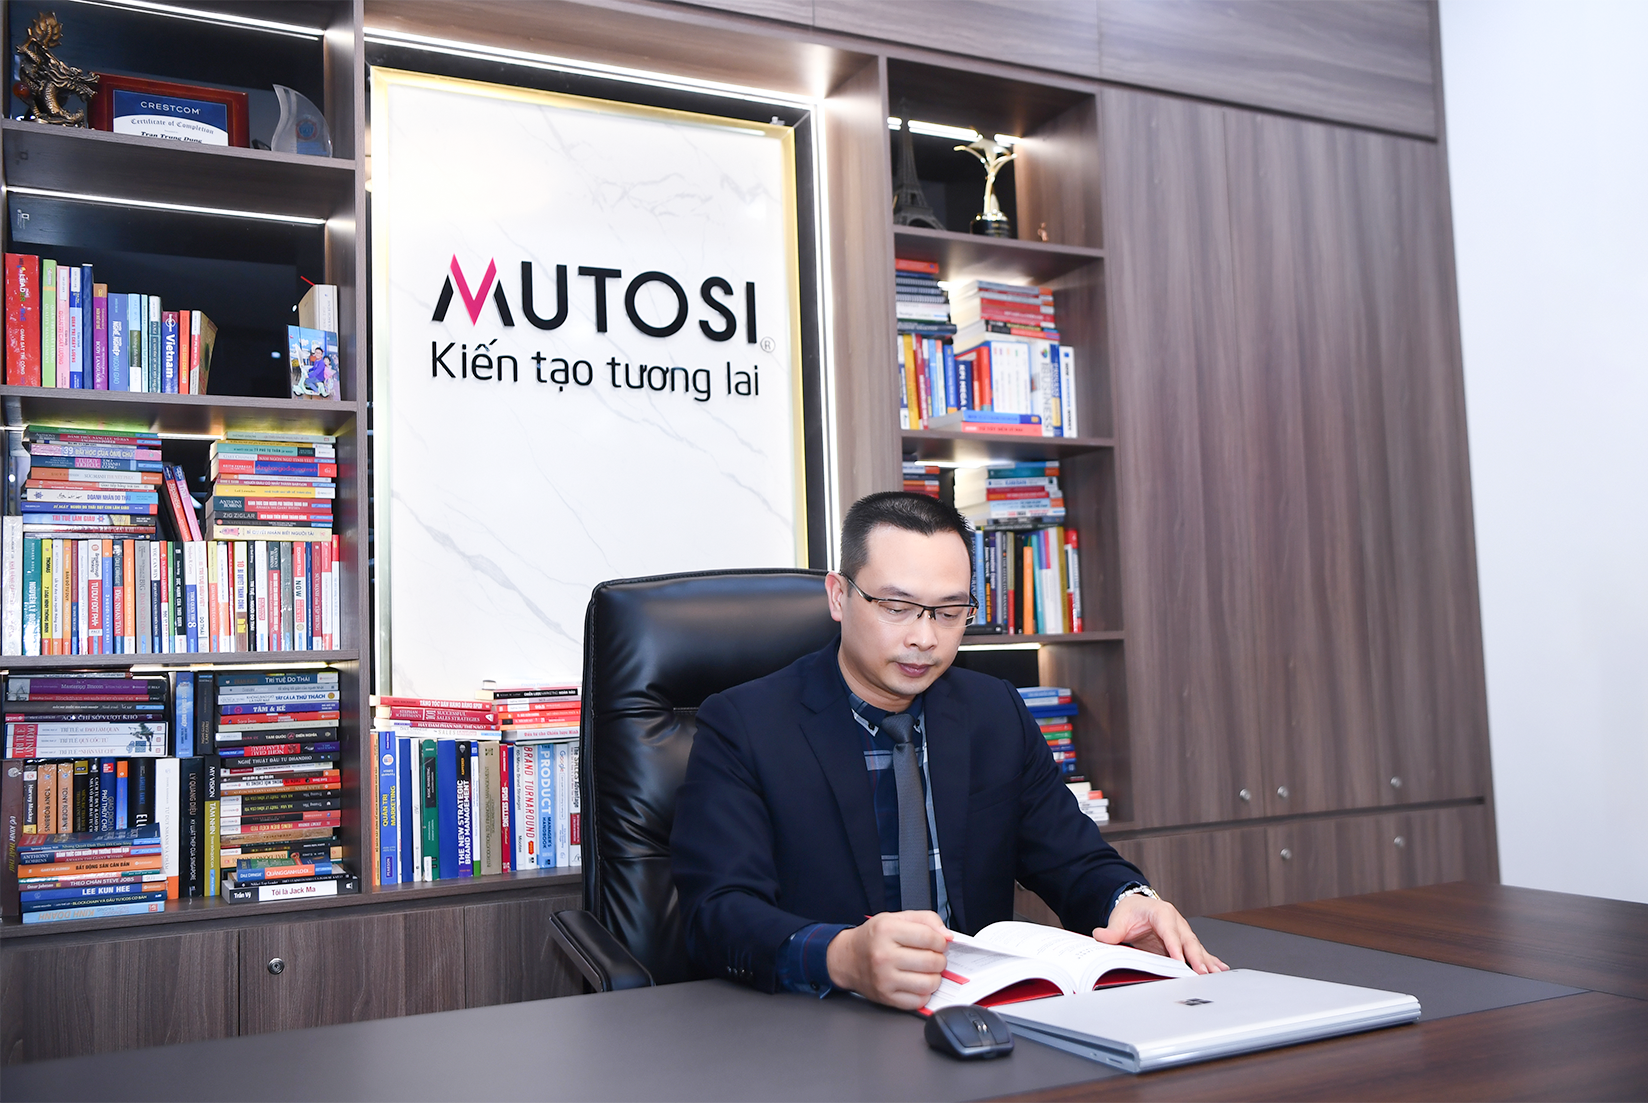 CEO Mutosi Trần Trung Dũng: Mang tới trải nghiệm tuyệt vời cho khách hàng sẽ giúp Doanh nghiệp trường tồn - 7